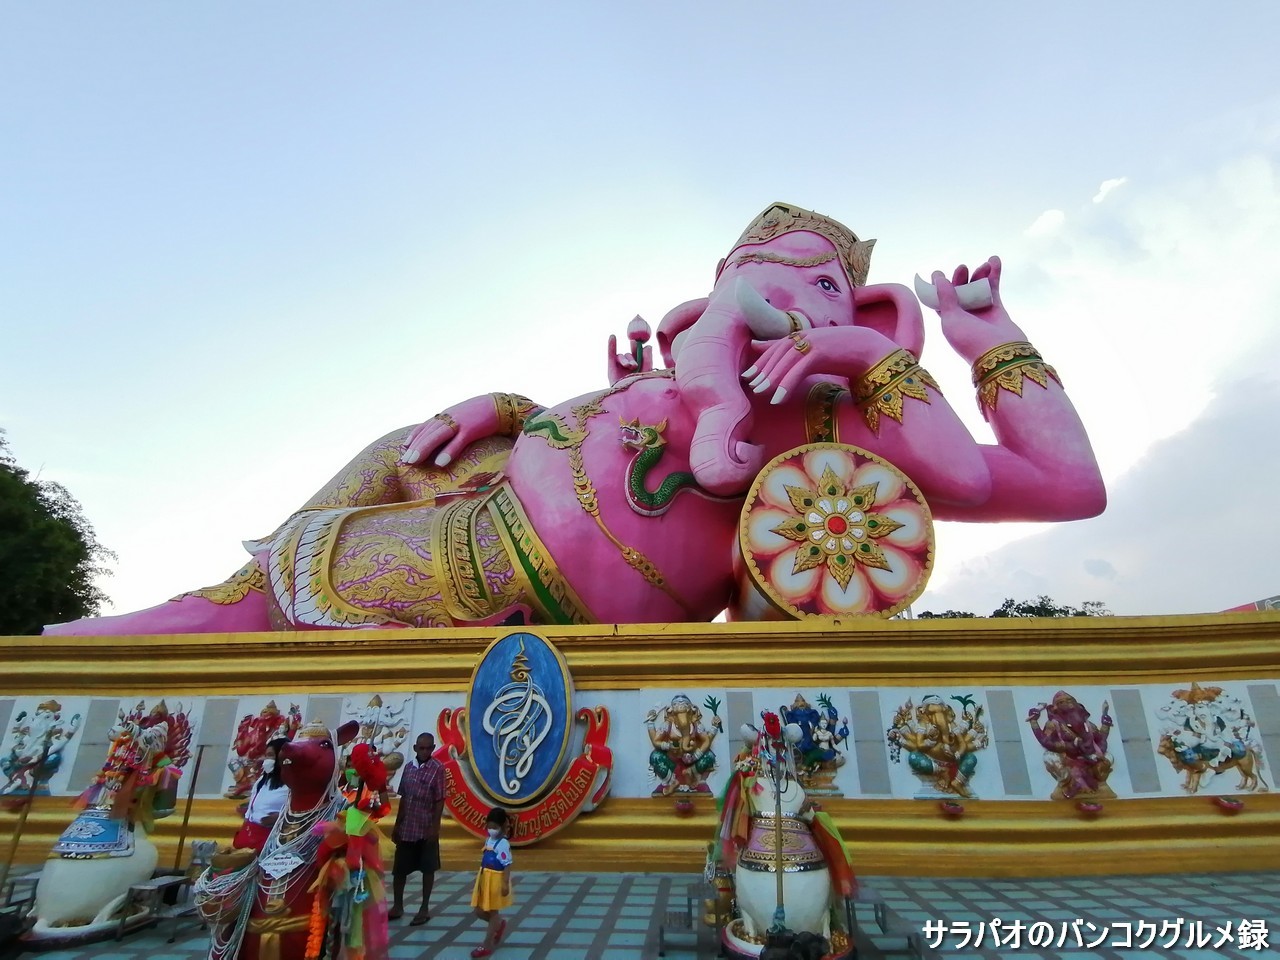 ワット・サマーン･ラッタナーラームは巨大なピンクのガネーシャ像で有名な寺院＠チャチューンサオ県